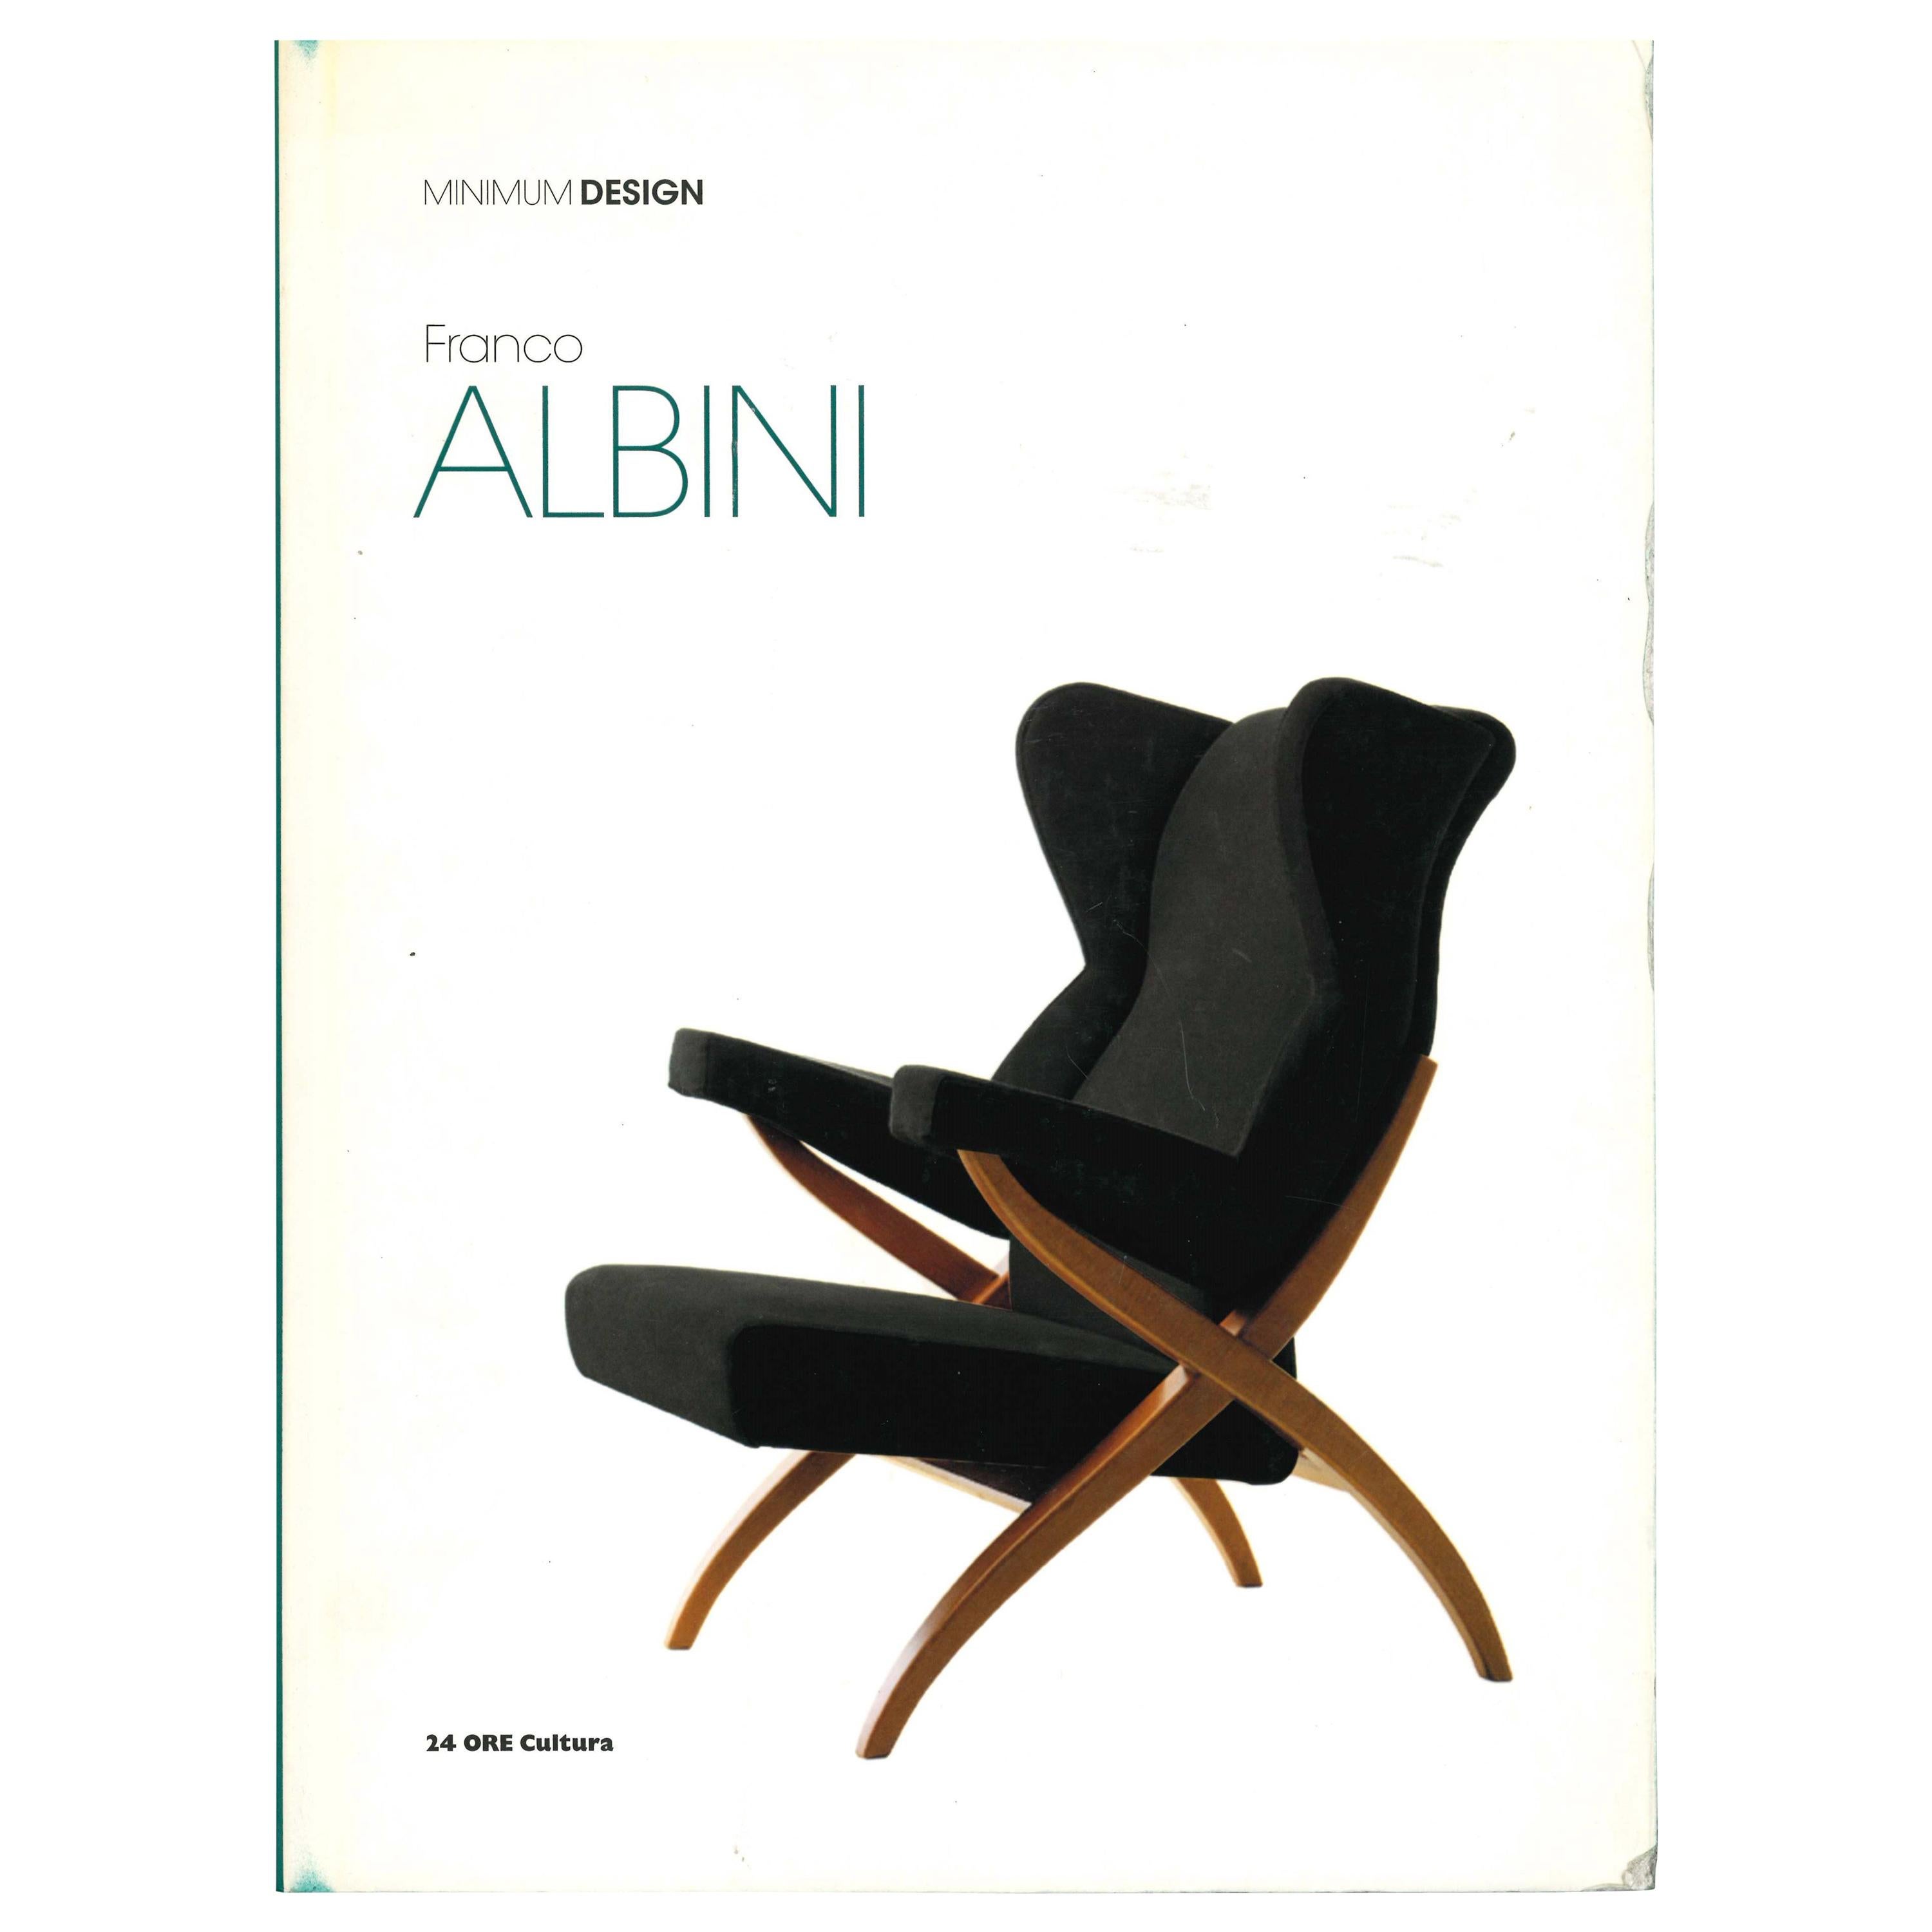 Franco Albini, Minimum Design 'Book'